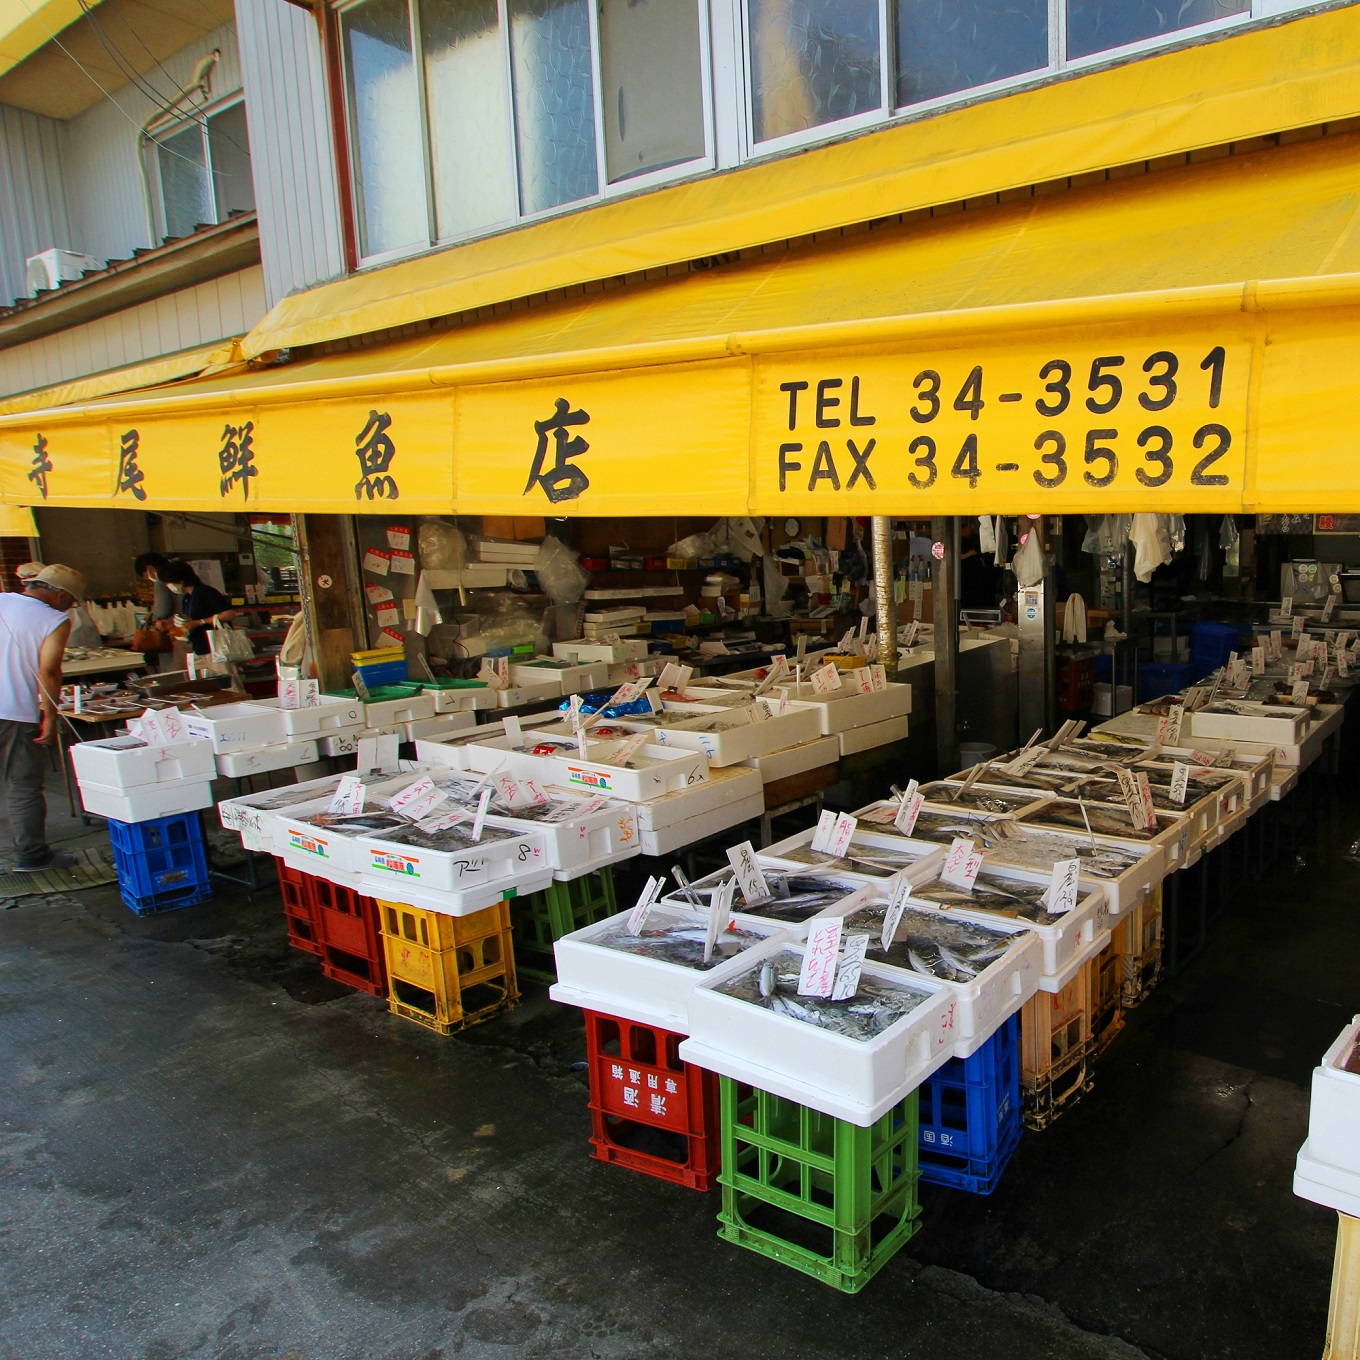 老舗 寺尾鮮魚店の鰹のタタキ 1.5kgセット(タレ・薬味付き)